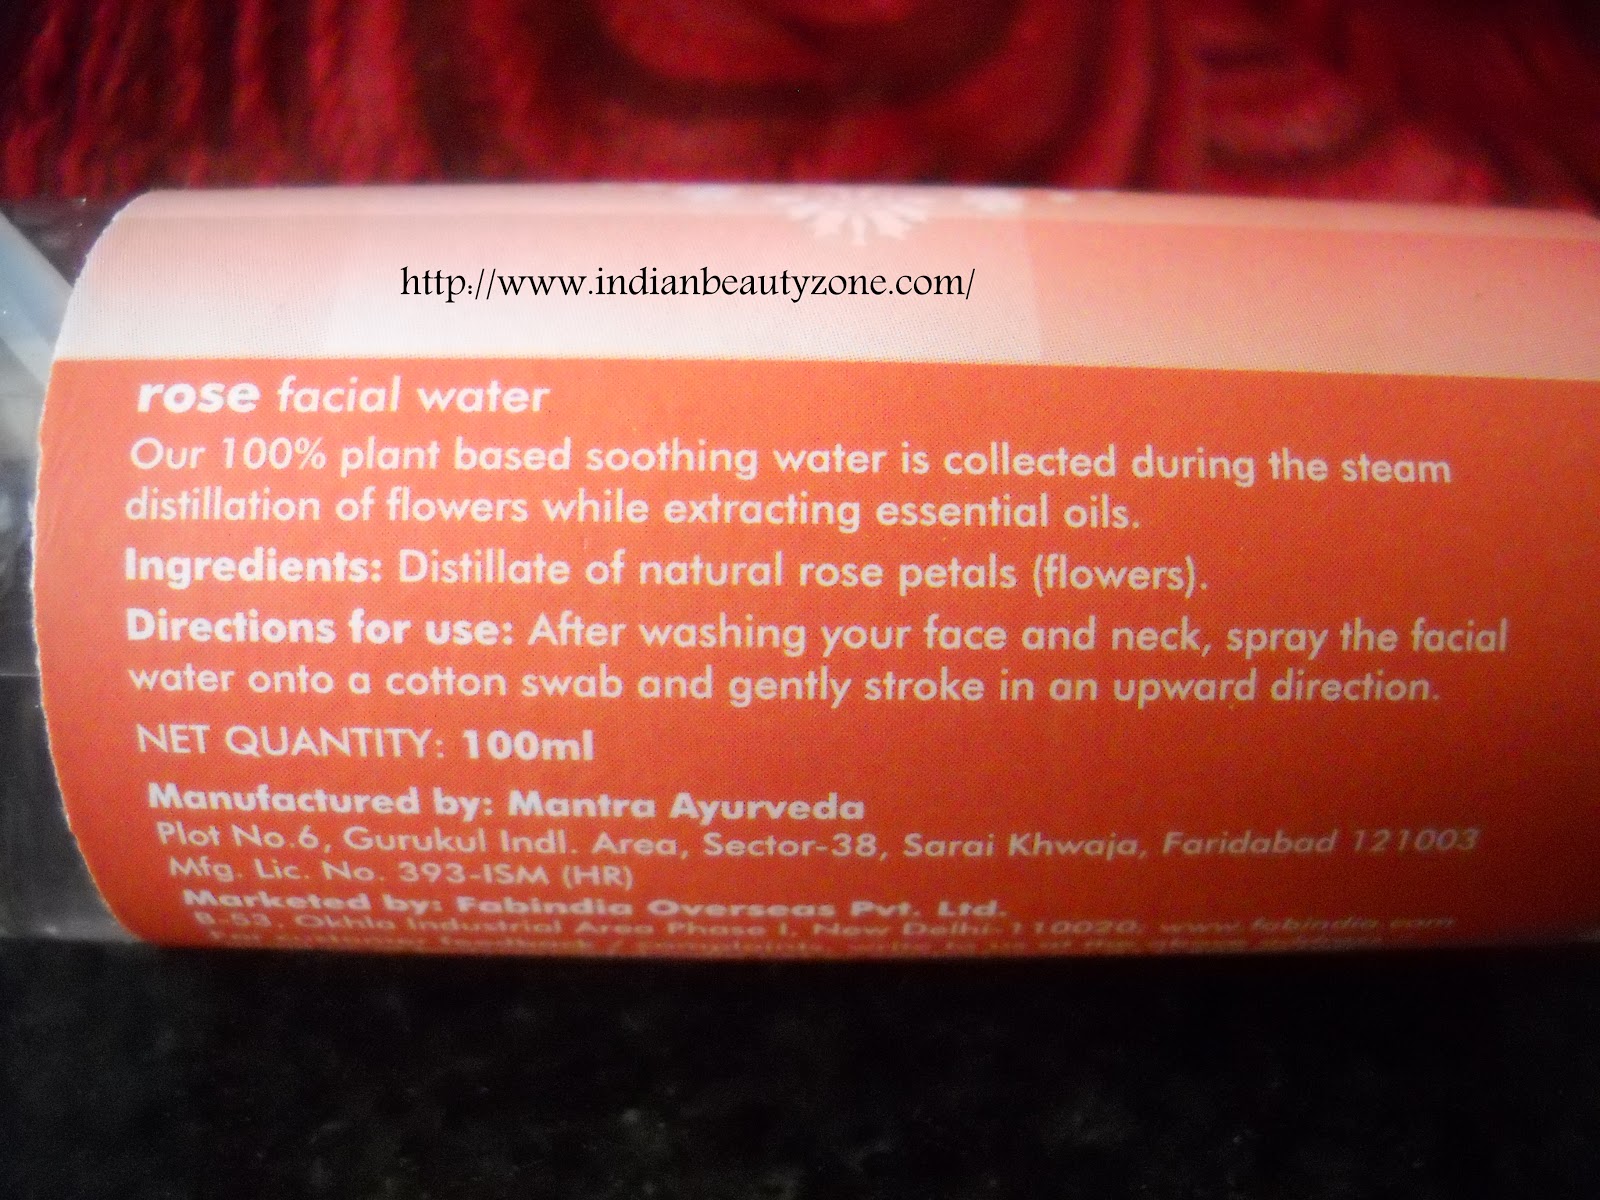 Indian Beauty Zone: FabIndia Rose Facial Water Review